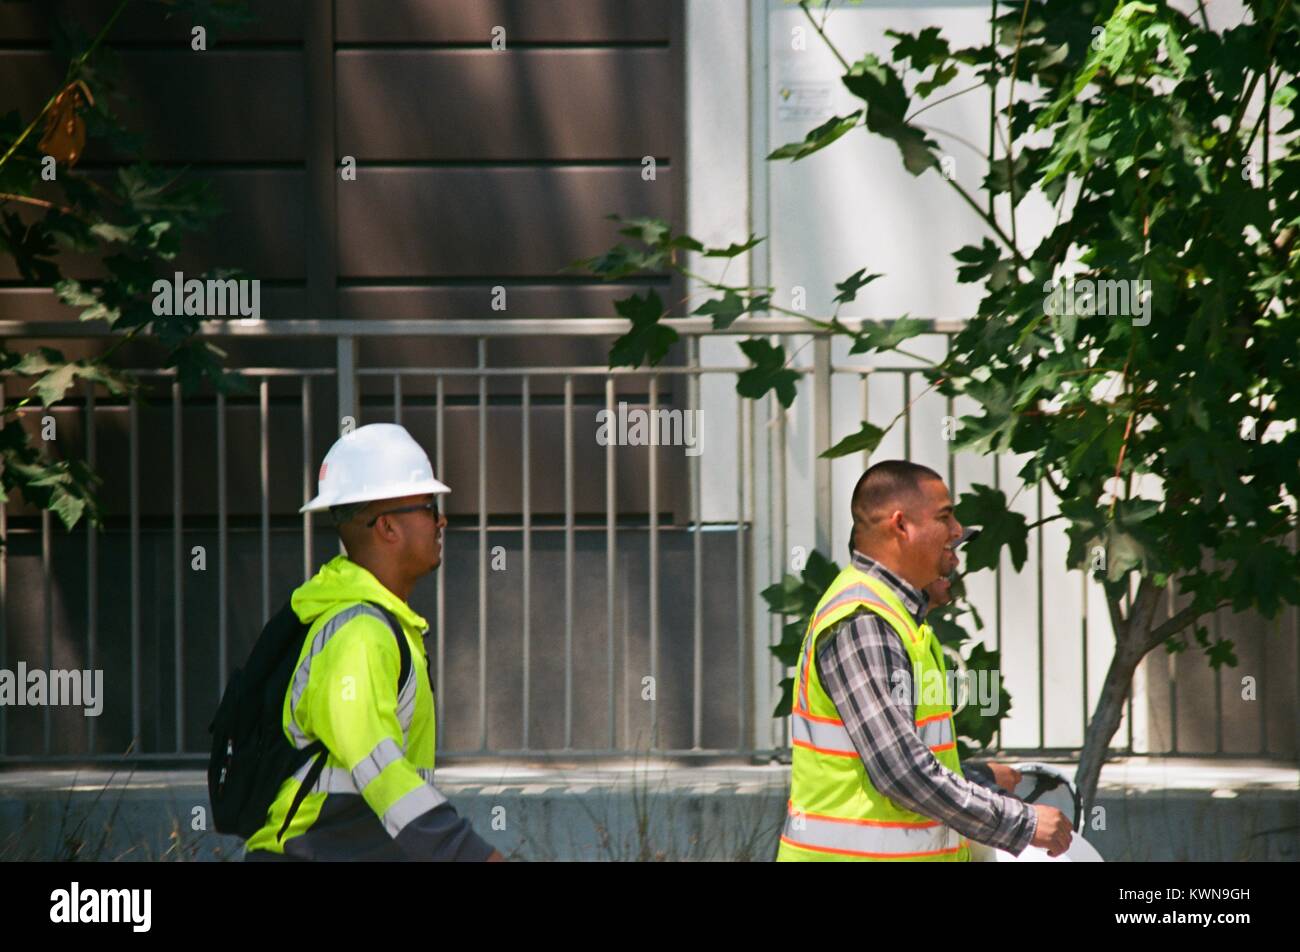 Les travailleurs de la construction avec des casques et des gilets haute visibilité à pied près de la zone de construction à l'Apple Park, connu familièrement comme "le vaisseau spatial", le nouveau quartier général d'Apple Inc dans la Silicon Valley ville de Cupertino, Californie, 25 juillet 2017. Banque D'Images